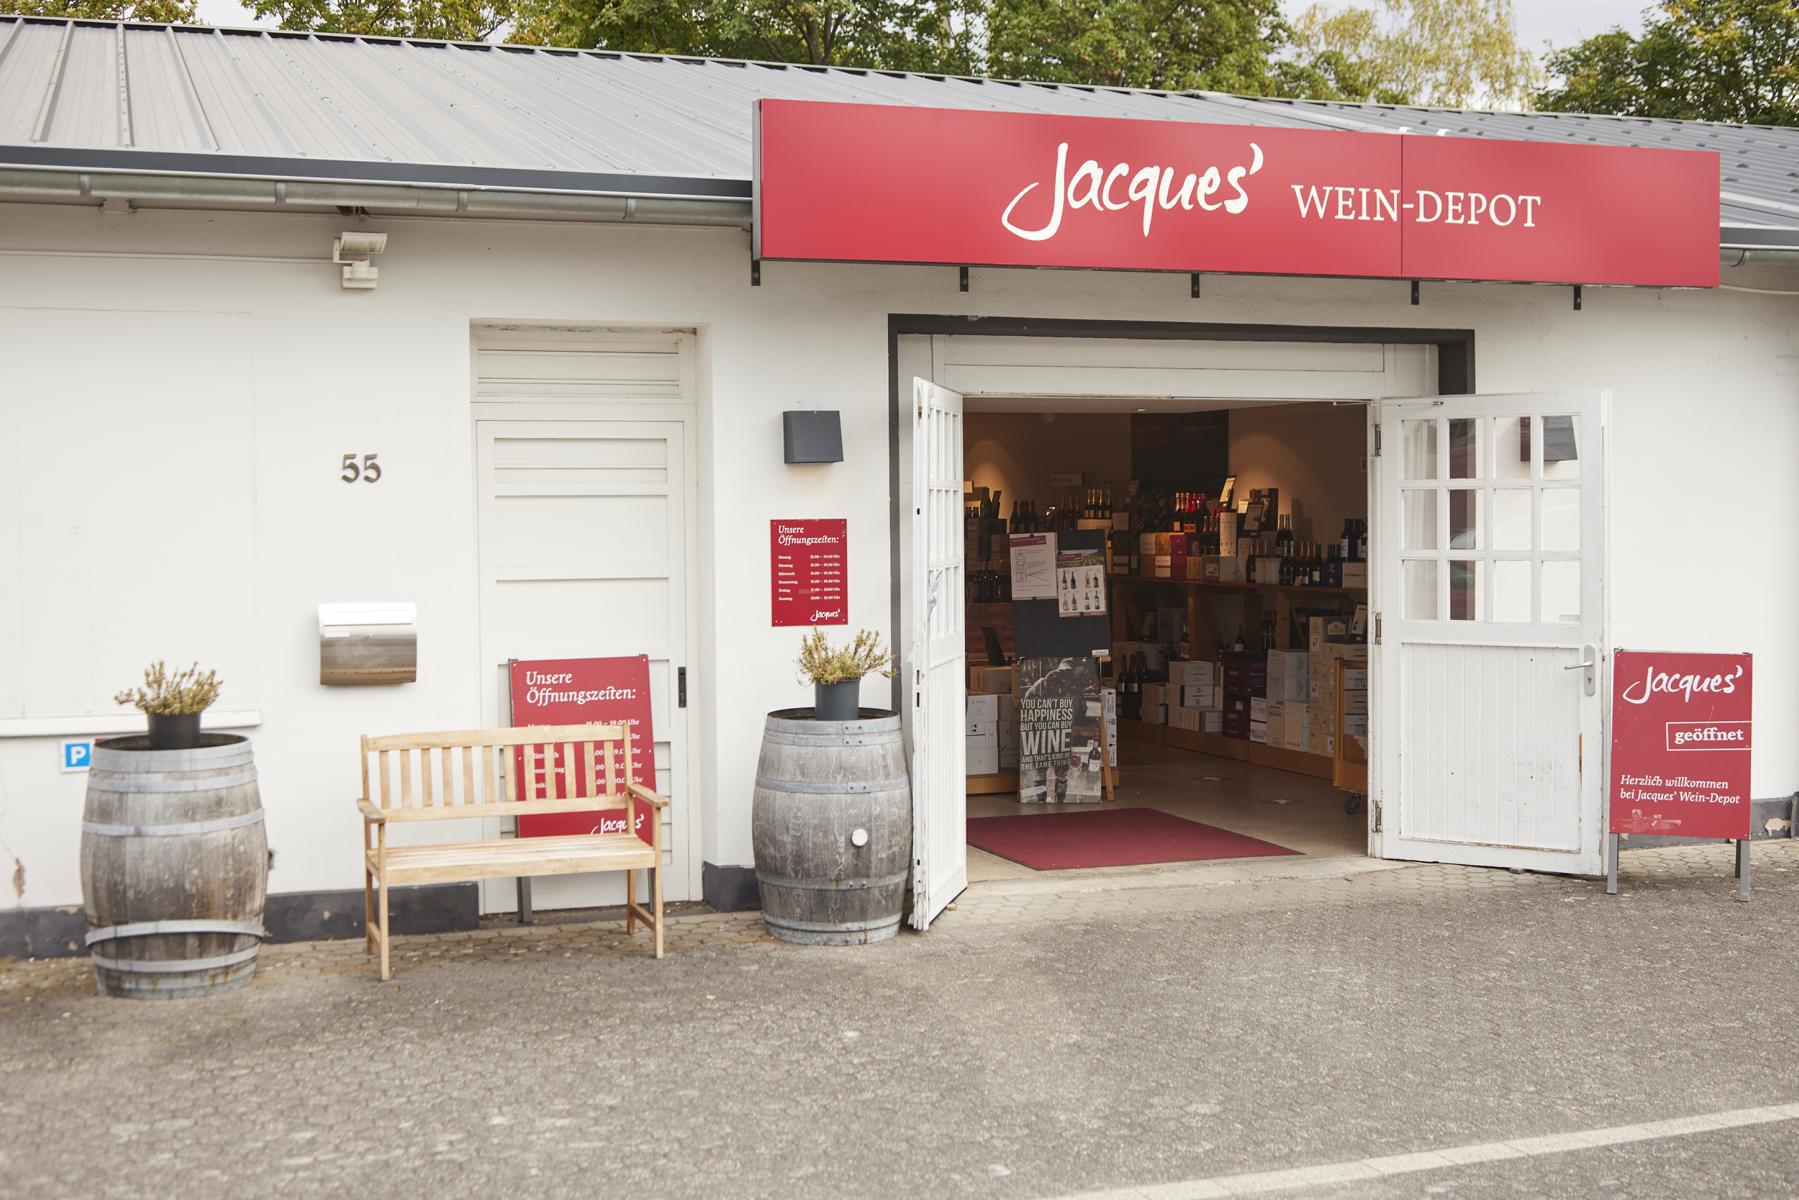 Bild 2 Jacques’ Wein-Depot Bonn-Beuel in Bonn